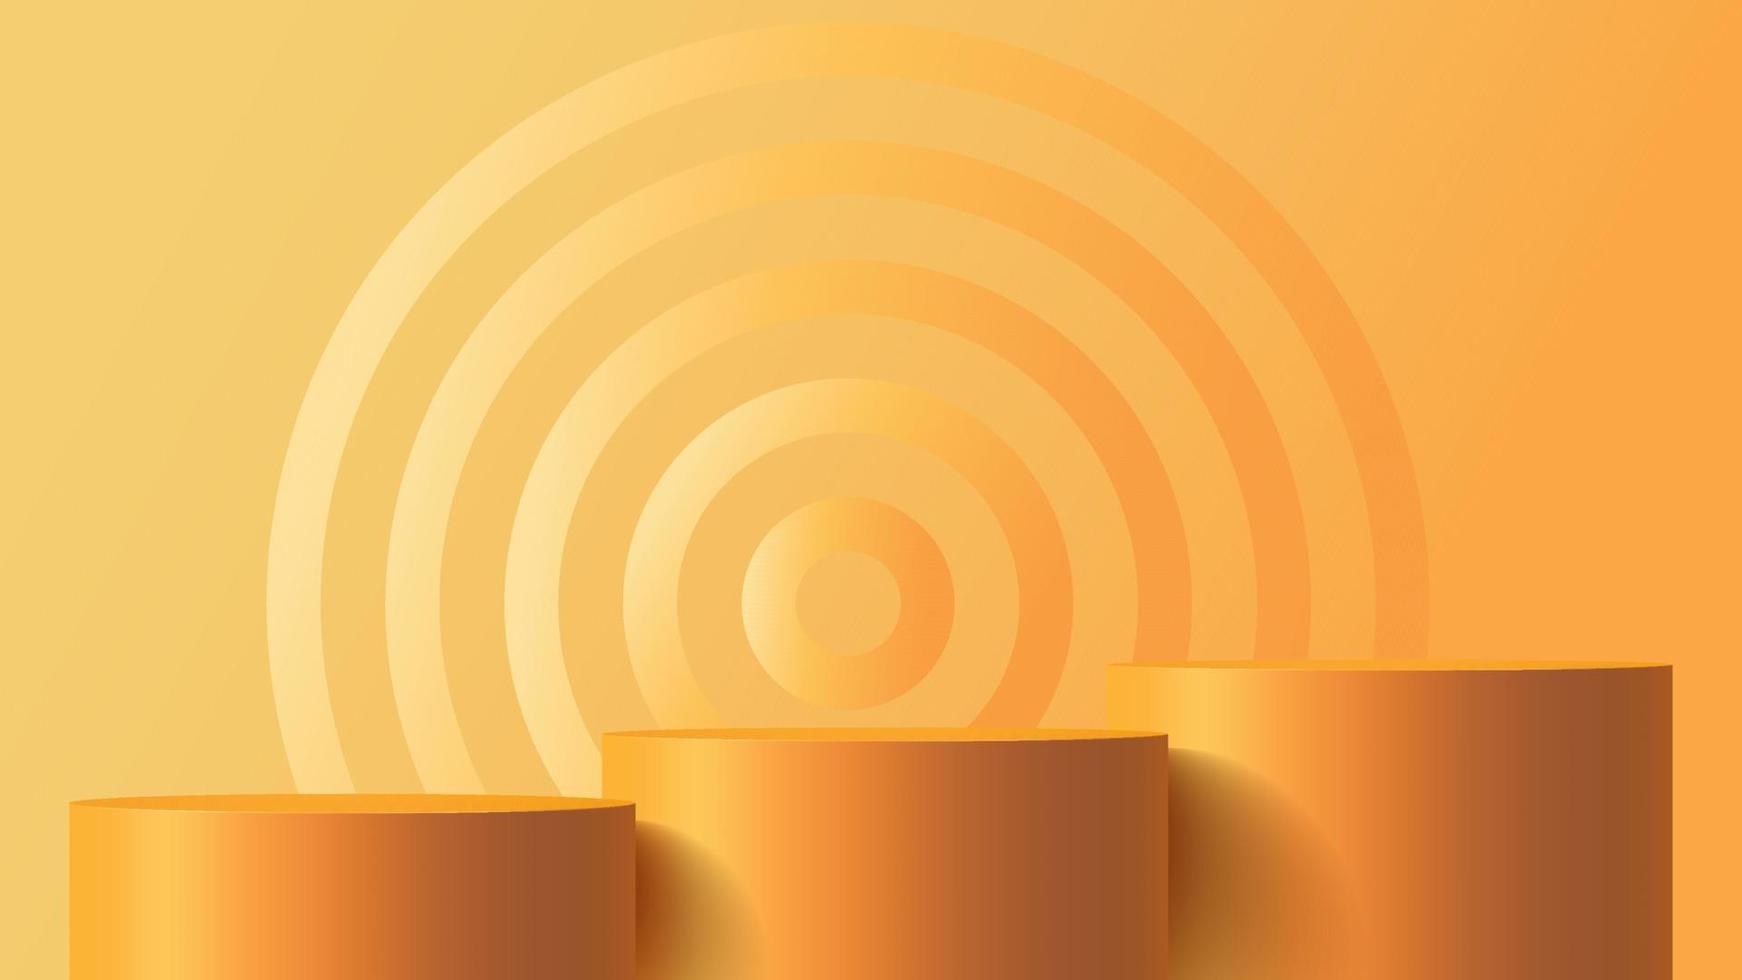 fundo simulado do pódio do produto para apresentação com ilustração 3d de fundo abstrato laranja vetor